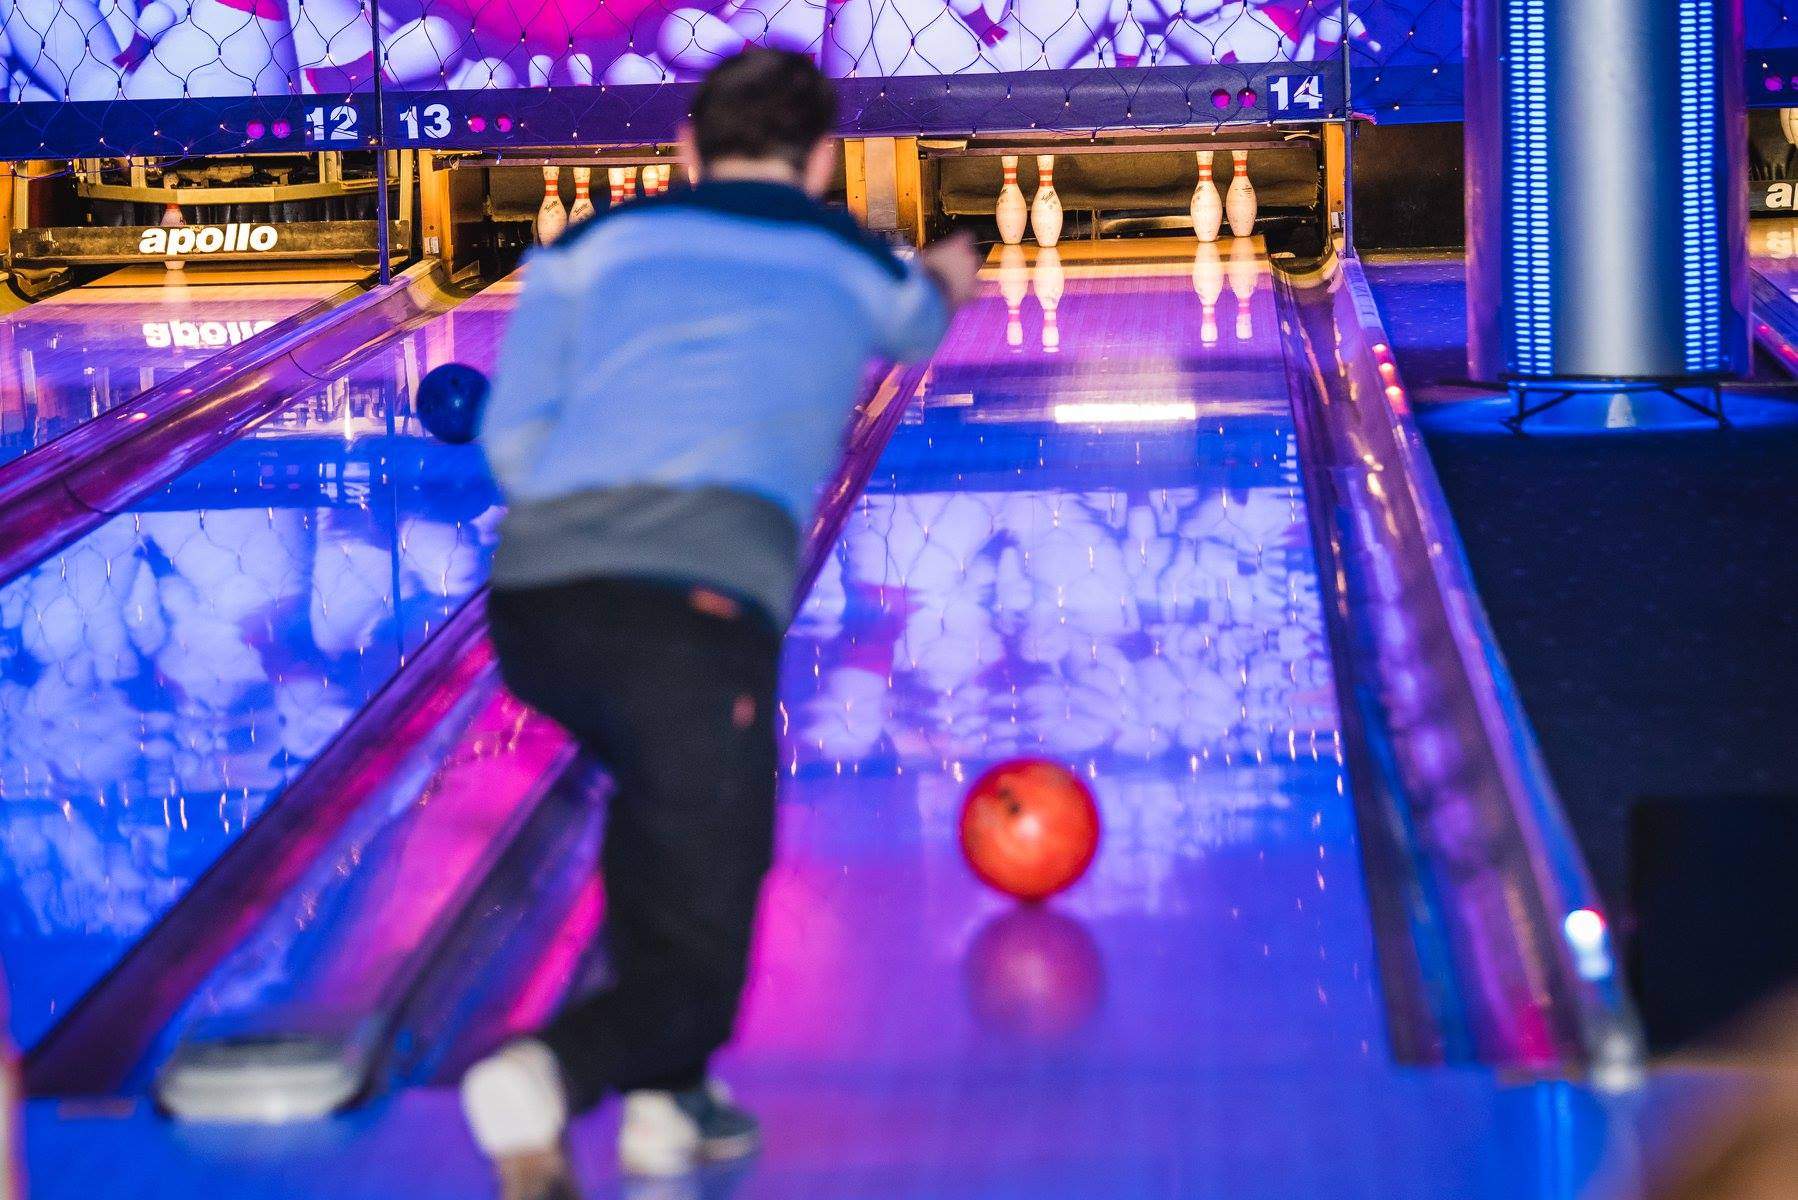 Photo: Apollo bowling